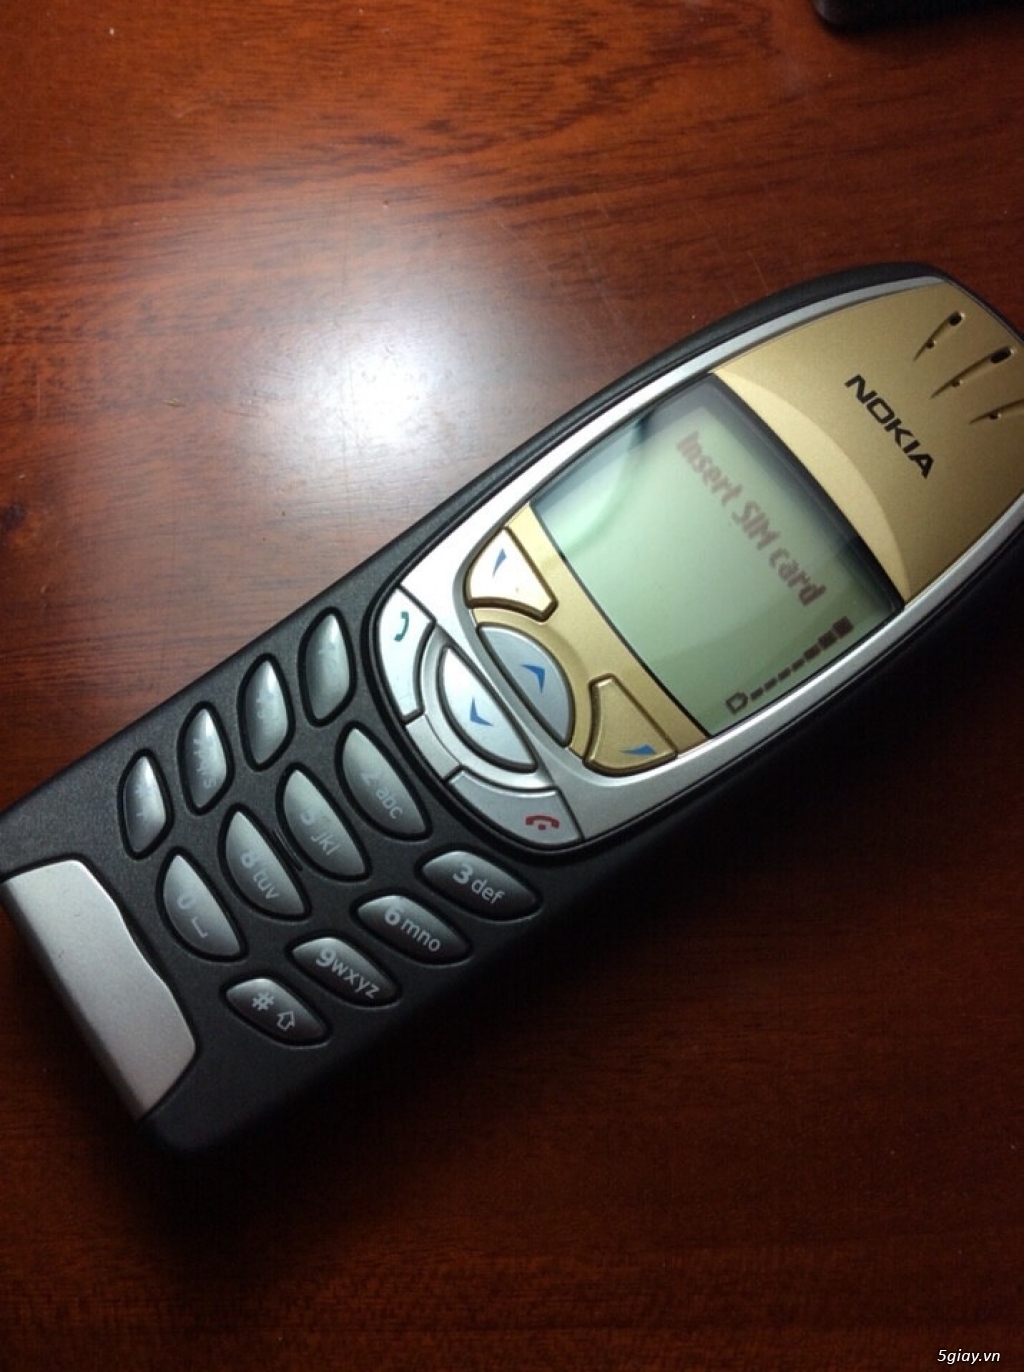 Nokia 6310i chuẩn xách tay eu, bản xuất pháp fabrique, đẹp xuất sắc !